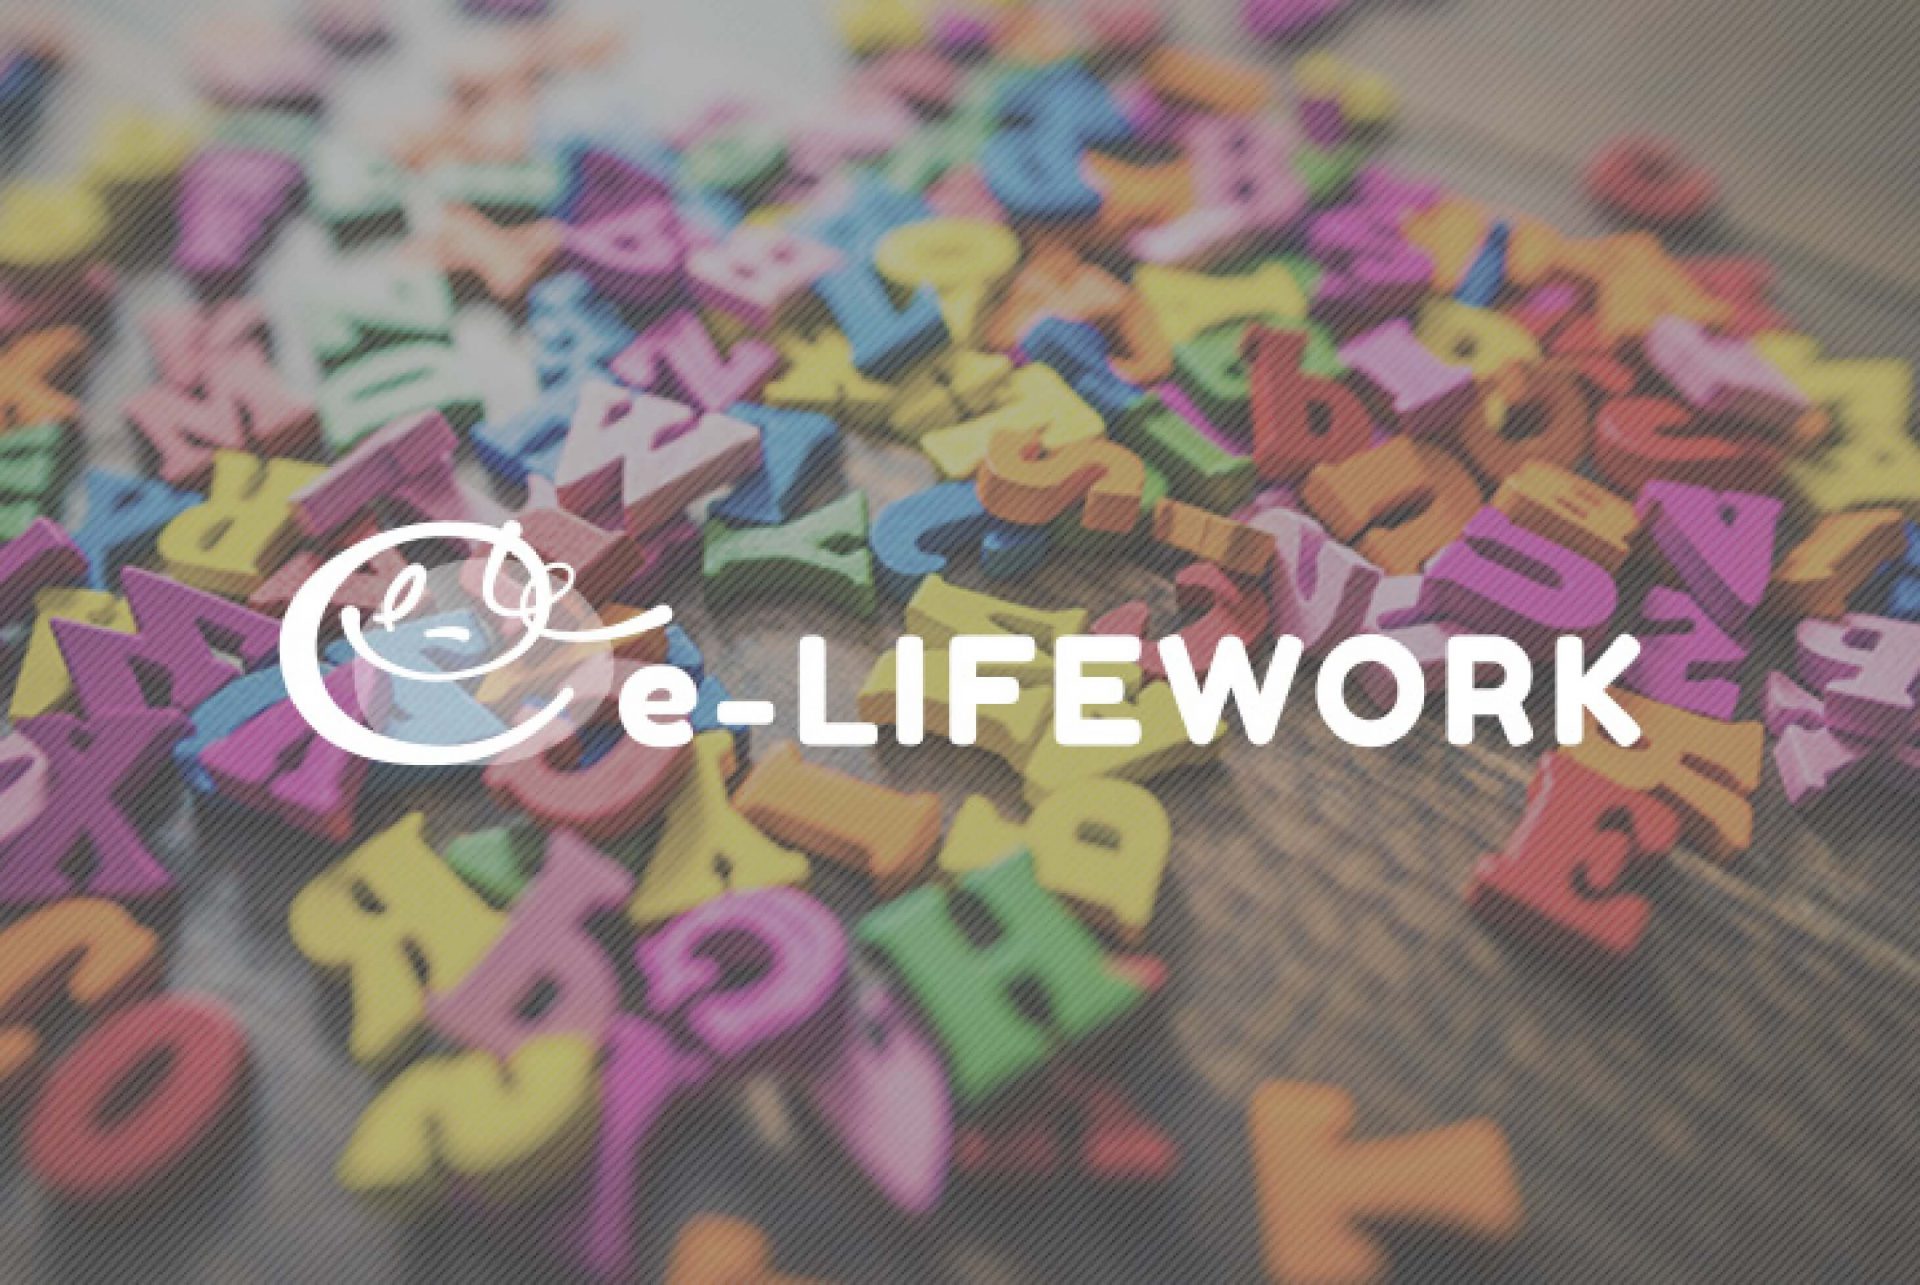 英単語帳を買うときに見るべきおすすめポイント 株式会社e Lifework